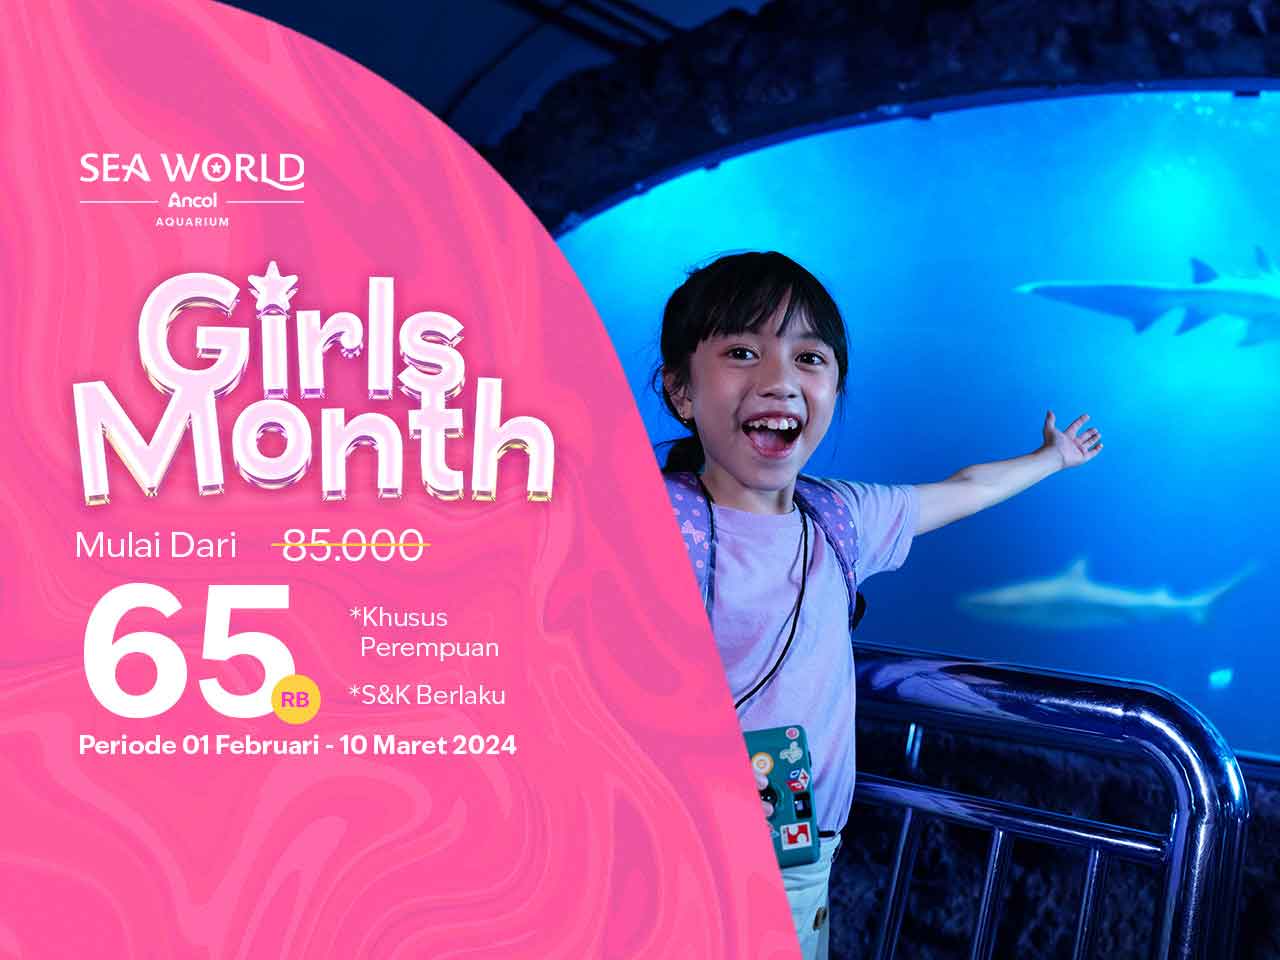 GIRLS MONTH! Jelajah Dunia Bawah Laut Mulai dari 65rb aja!